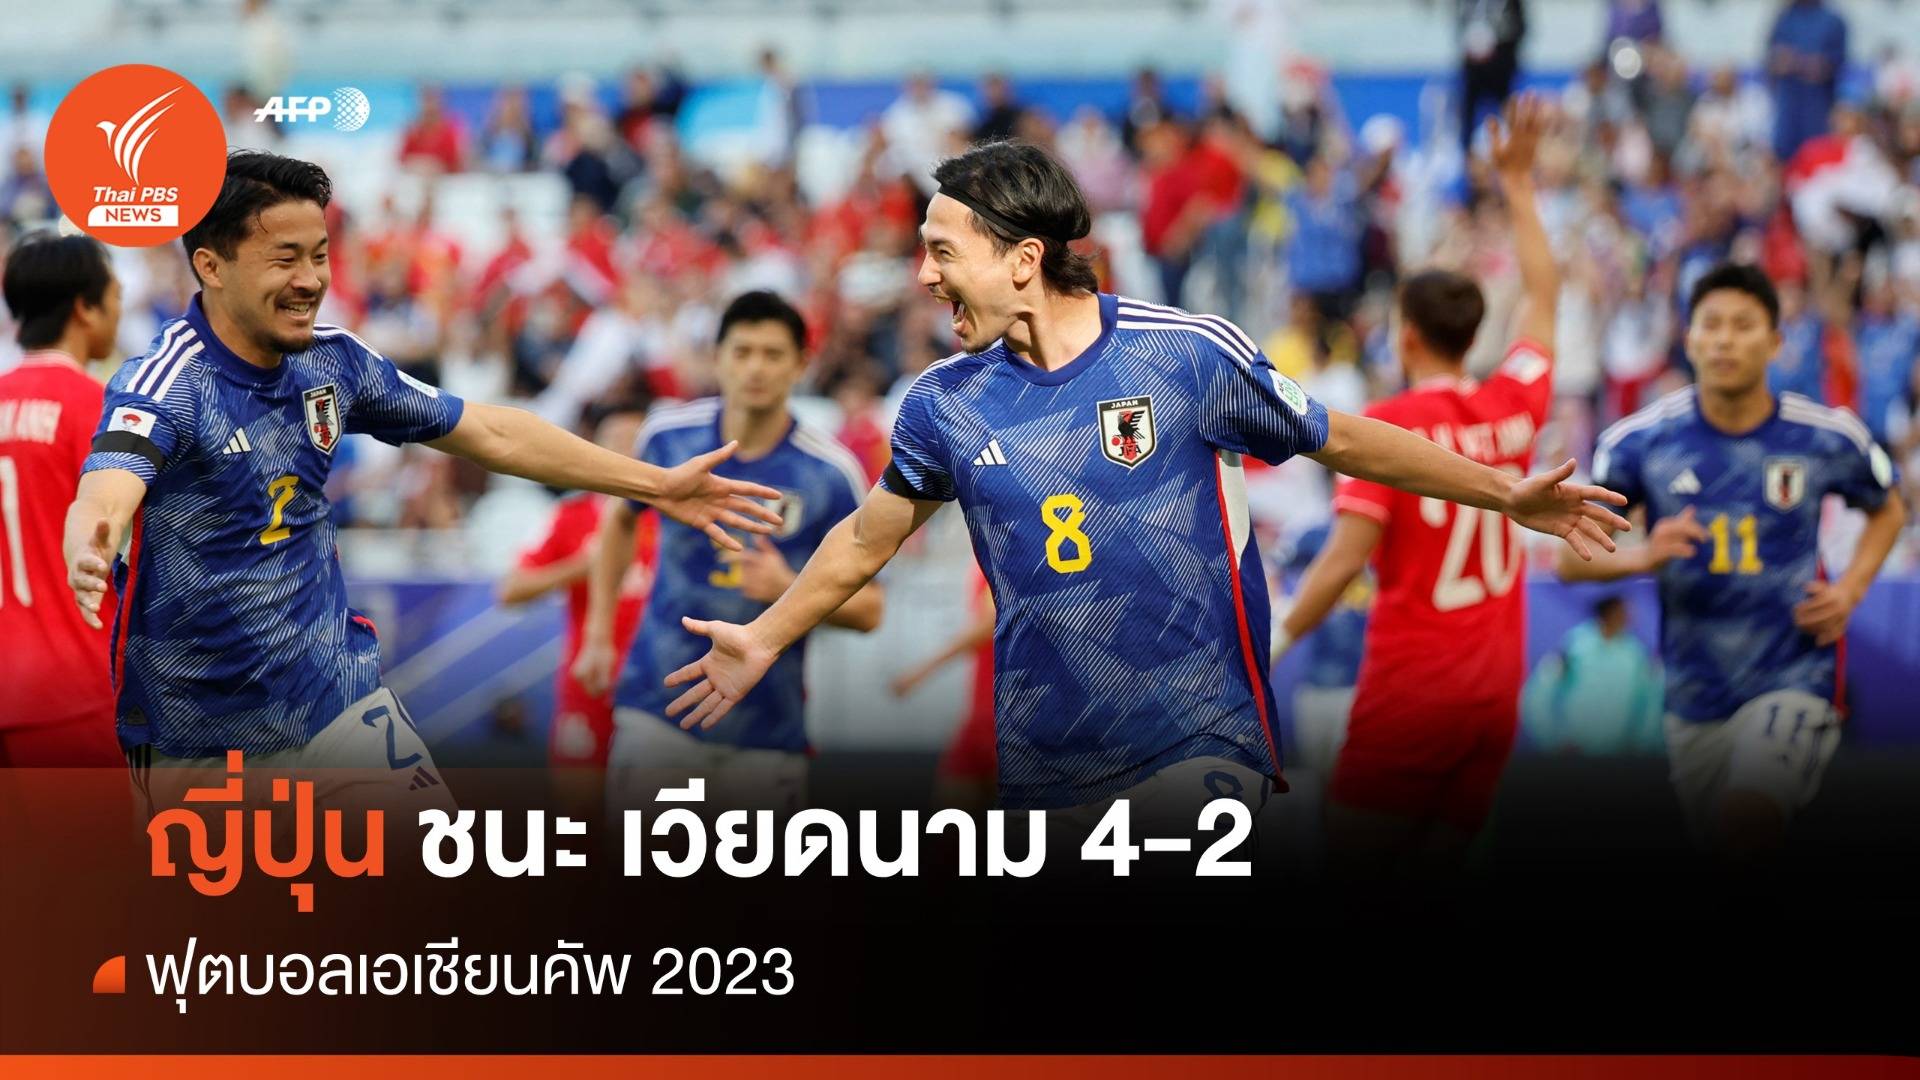 ญี่ปุ่น ชนะ เวียดนาม 4-2 เก็บ 3 แต้มแรกศึกฟุตบอลเอเชียนคัพ 